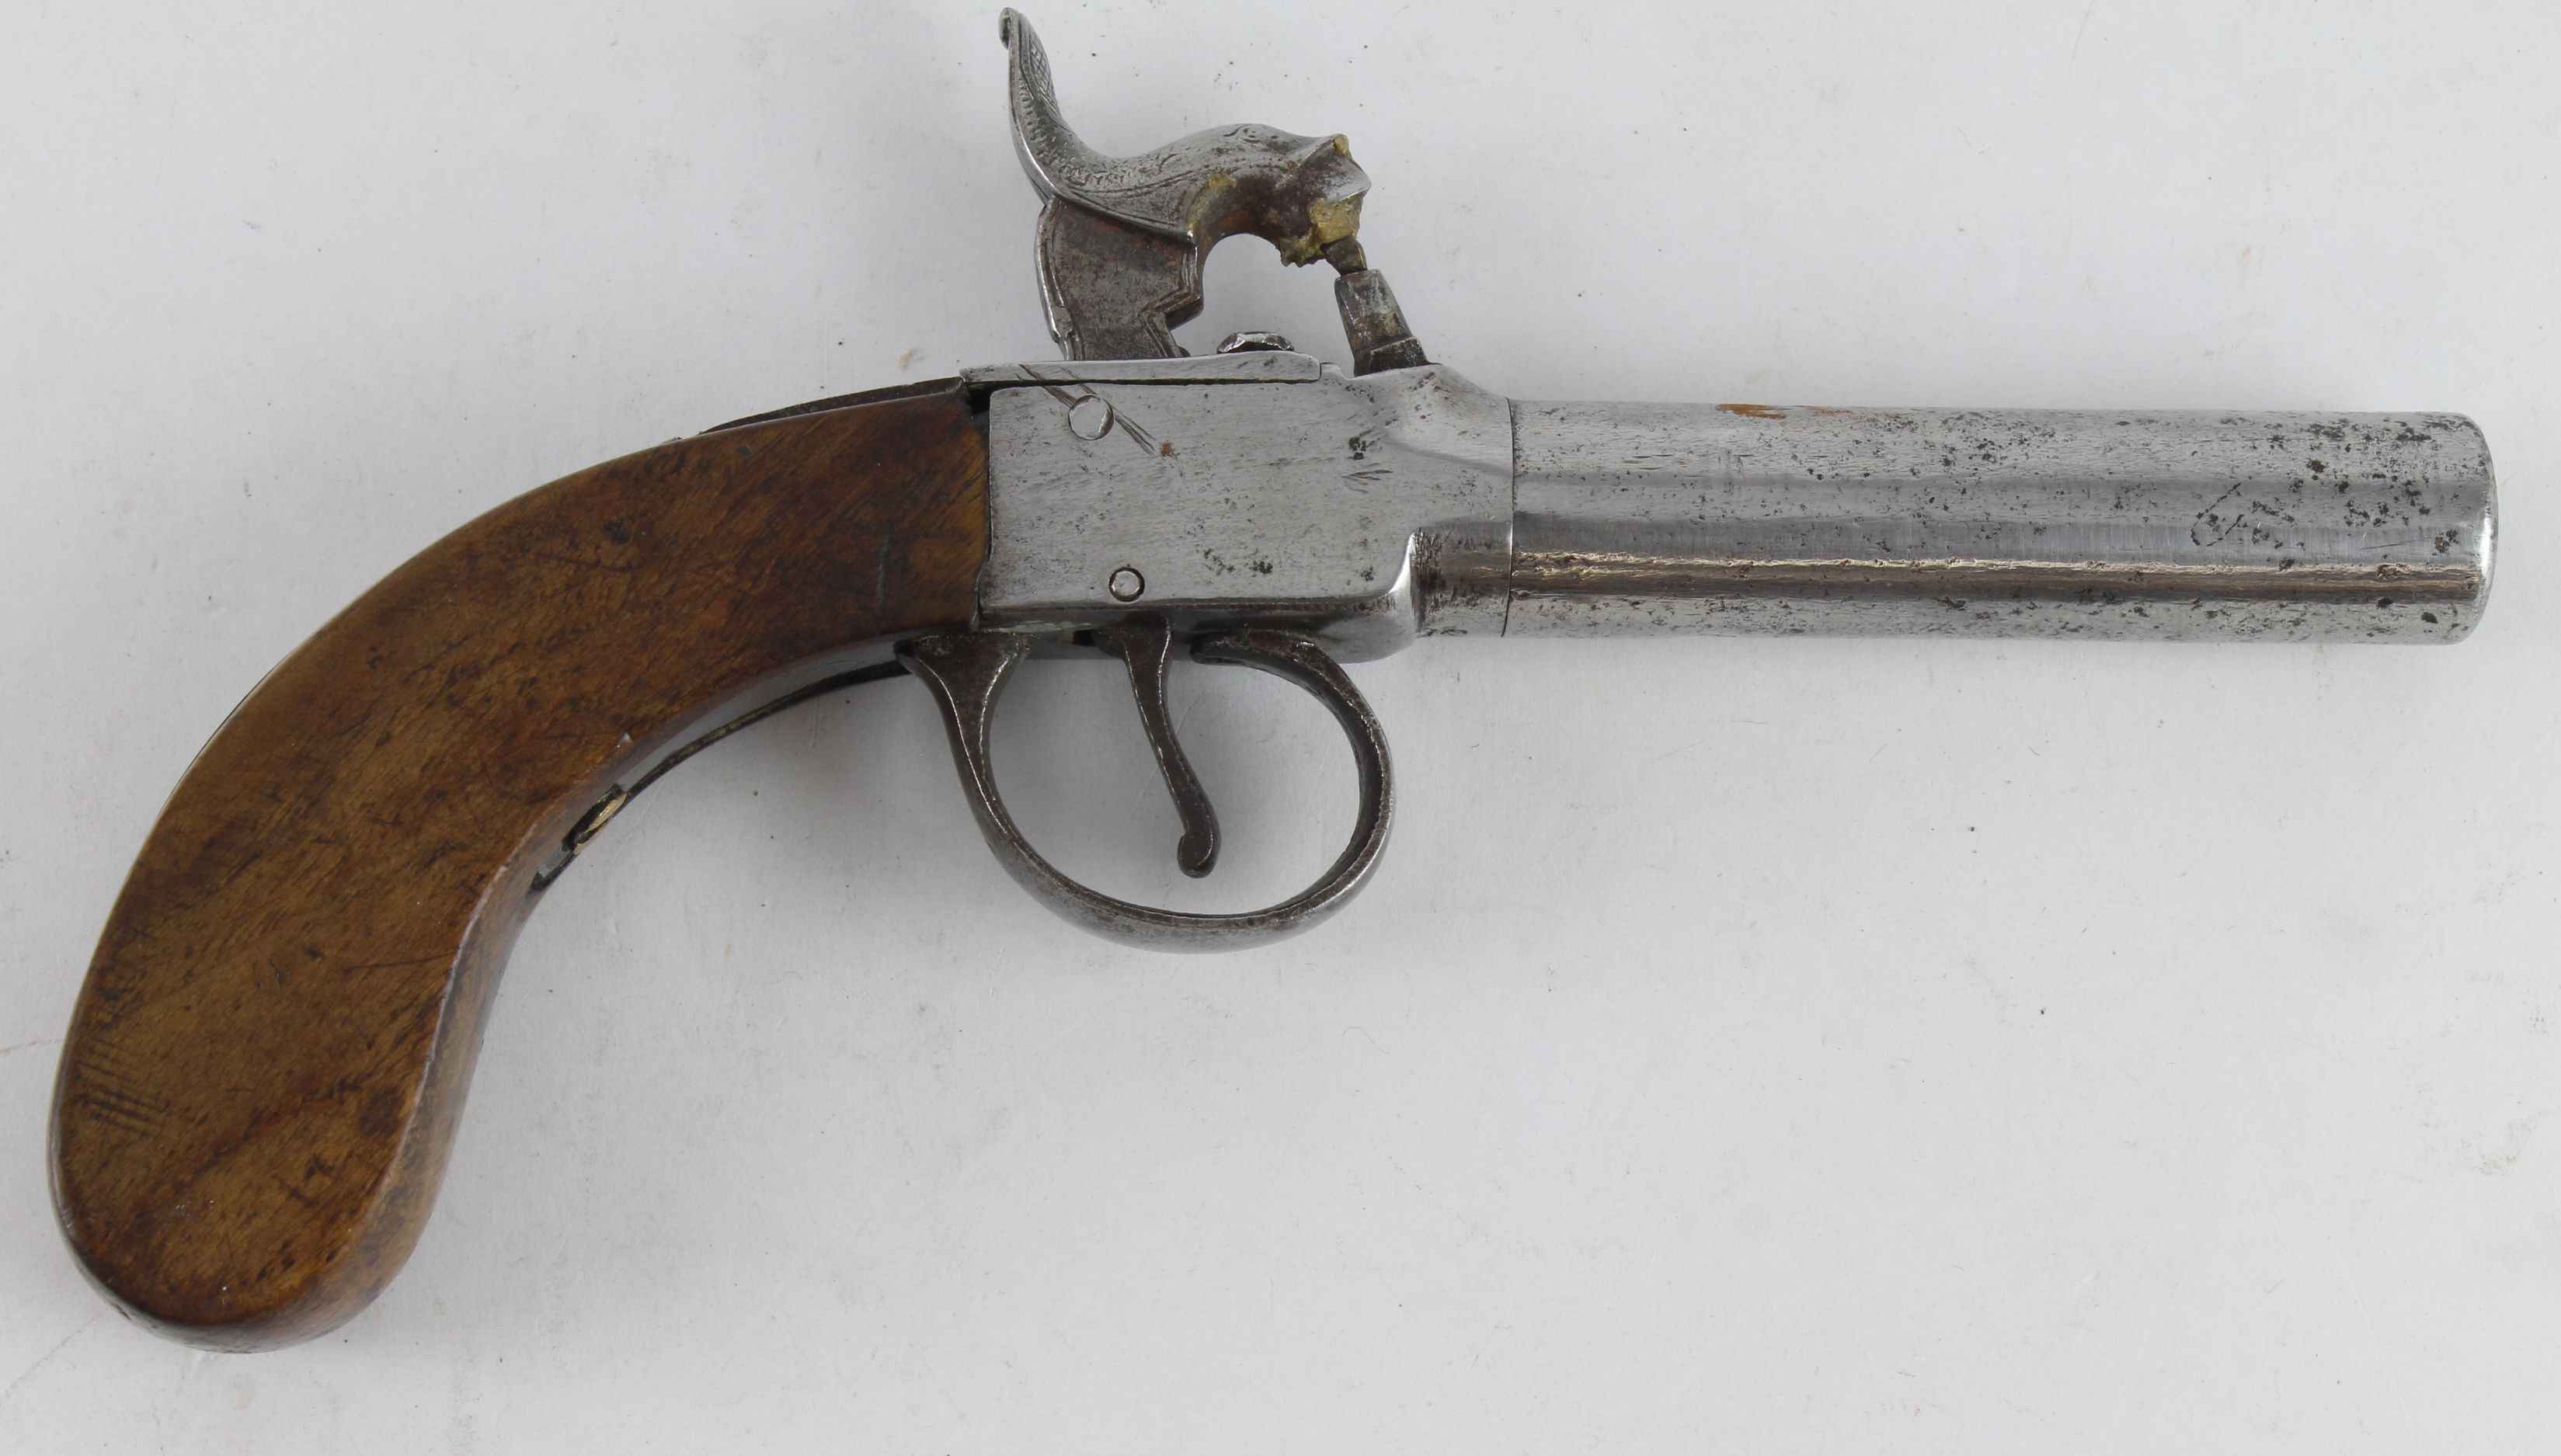 Percussion boxlock pocket pistol, turnoff barrel, circa 1850, proof to barrel, plain bag shaped